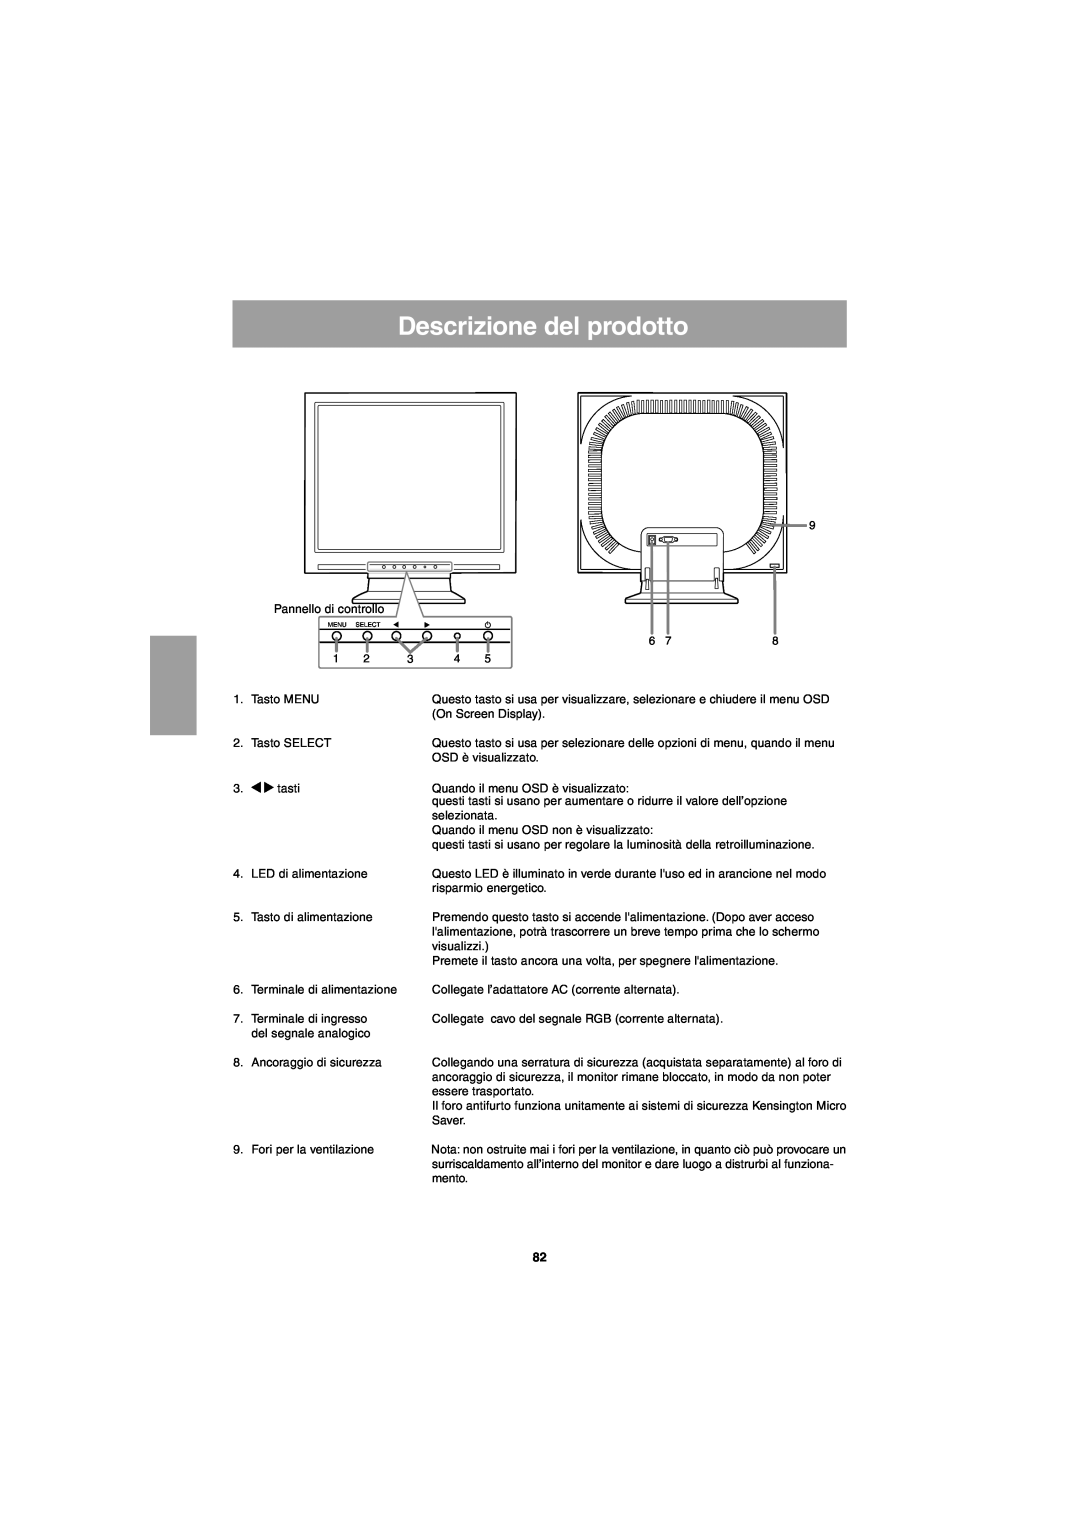 Sharp LL-T15G1, LL-E15G1 operation manual Descrizione del prodotto 